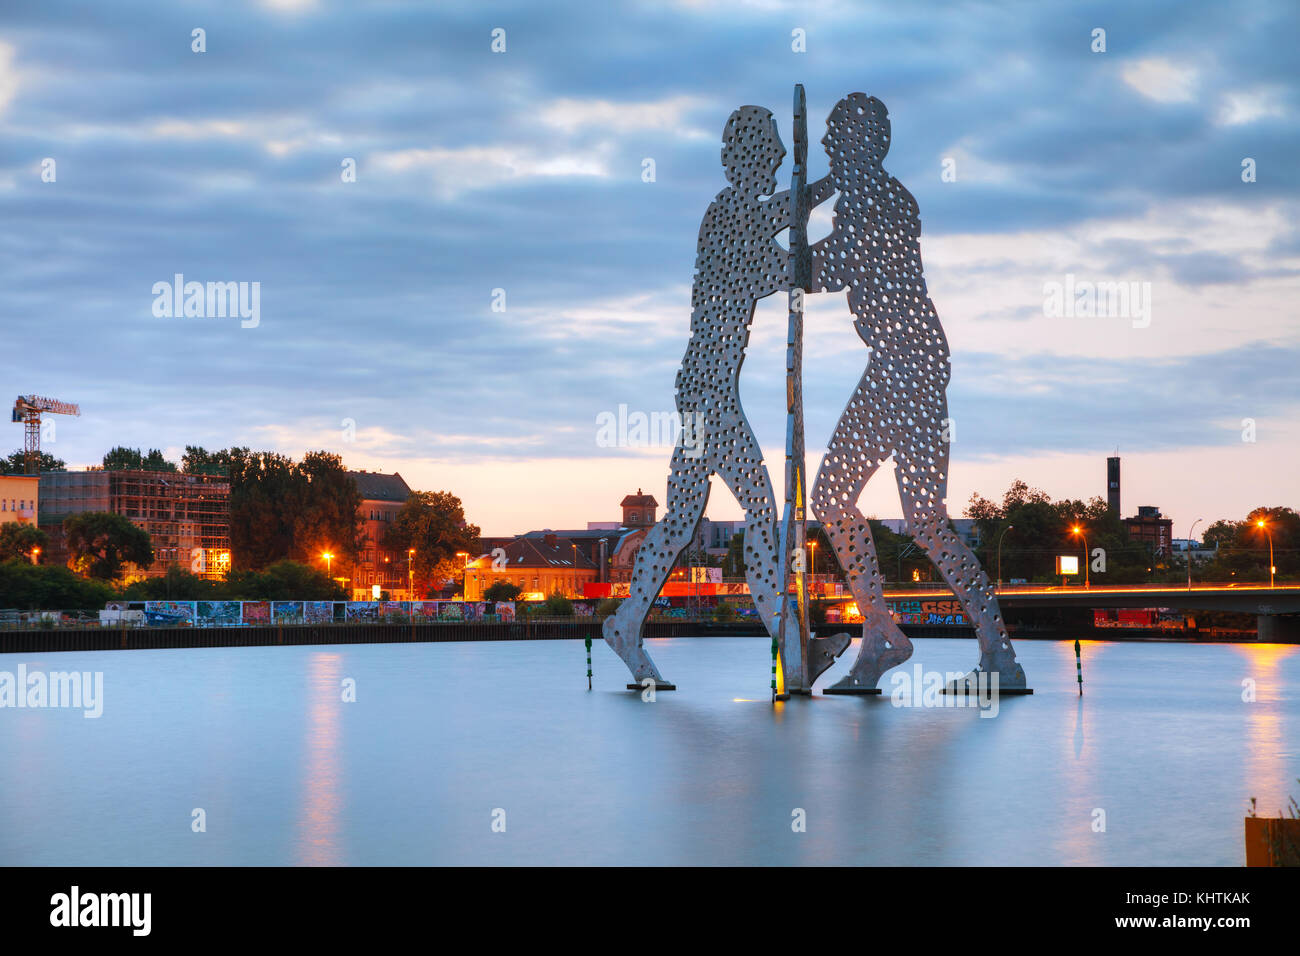 Berlin - 22. August 2017: molecul Mann Skulptur am 22. August 2017 in Berlin, Deutschland. Es ist einer in einer Reihe von Aluminium Skulpturen, entworfen von Ameri Stockfoto